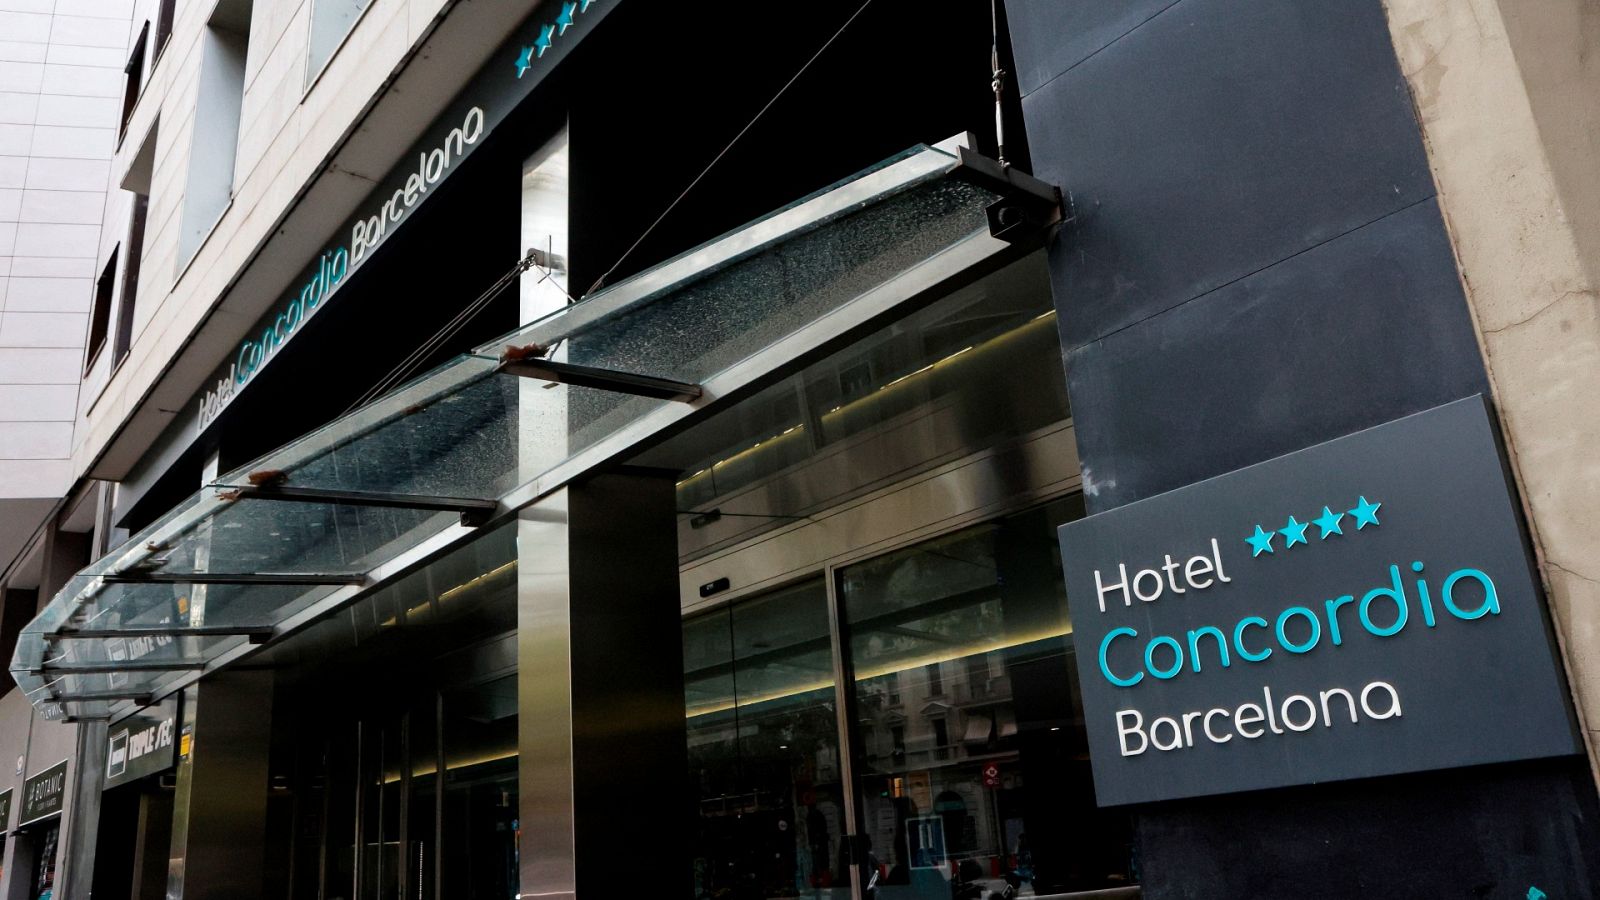 Fachada del hotel de Barcelona en el que apareció muerto un niño de 2 años